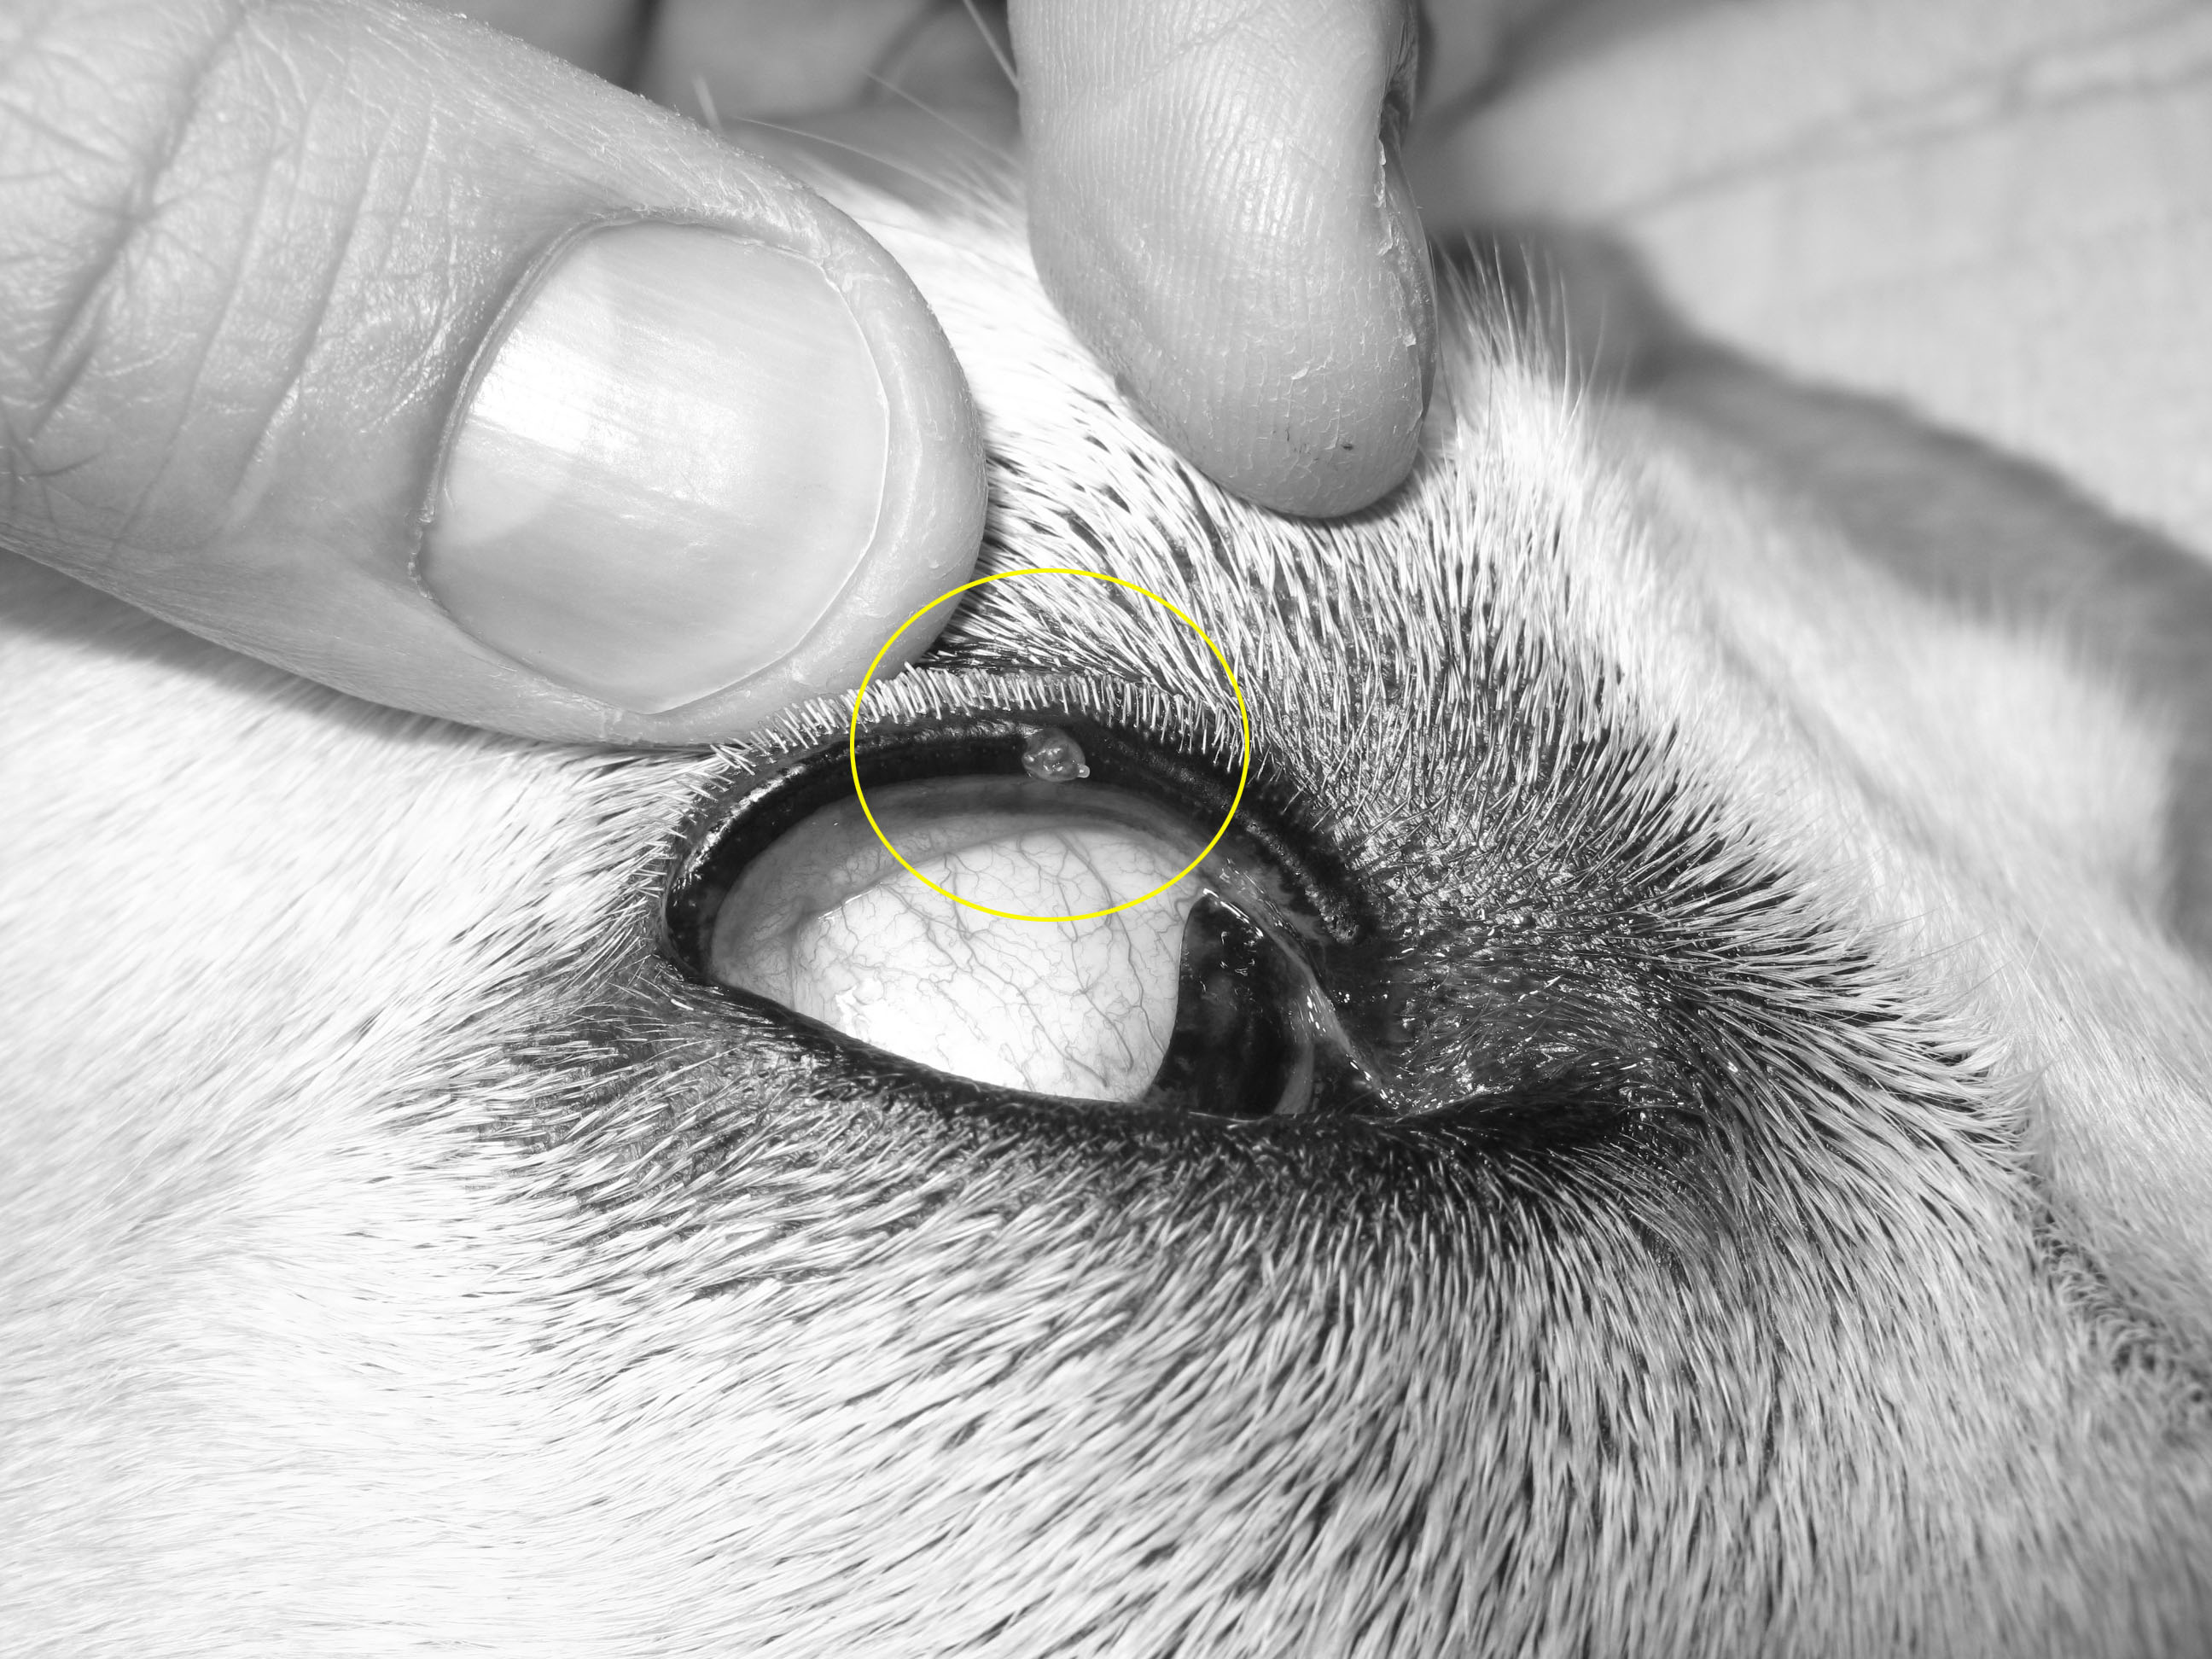 犬の眼瞼腫瘤 マイボーム腺腫 の切除手術 外科 やまと動物病院やまと動物病院